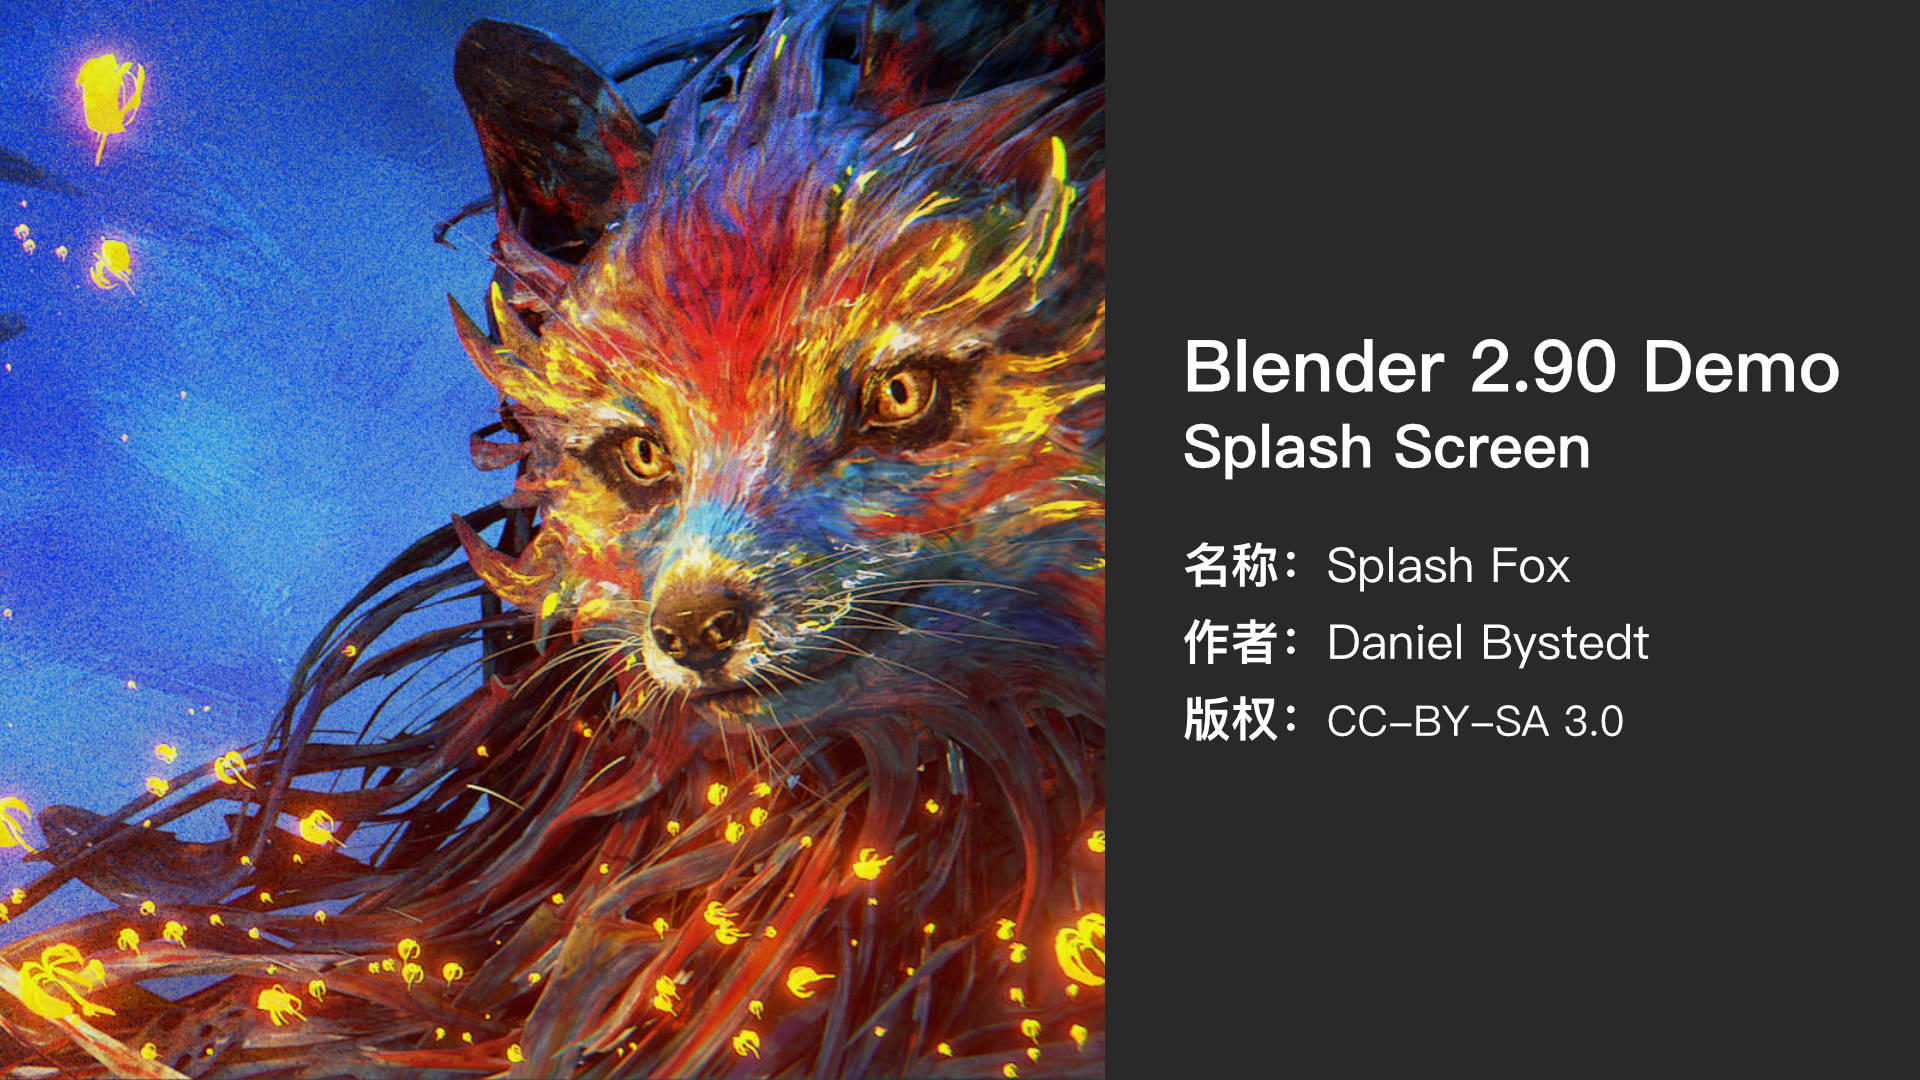 Blender 2.90 Splash Screen.jpg